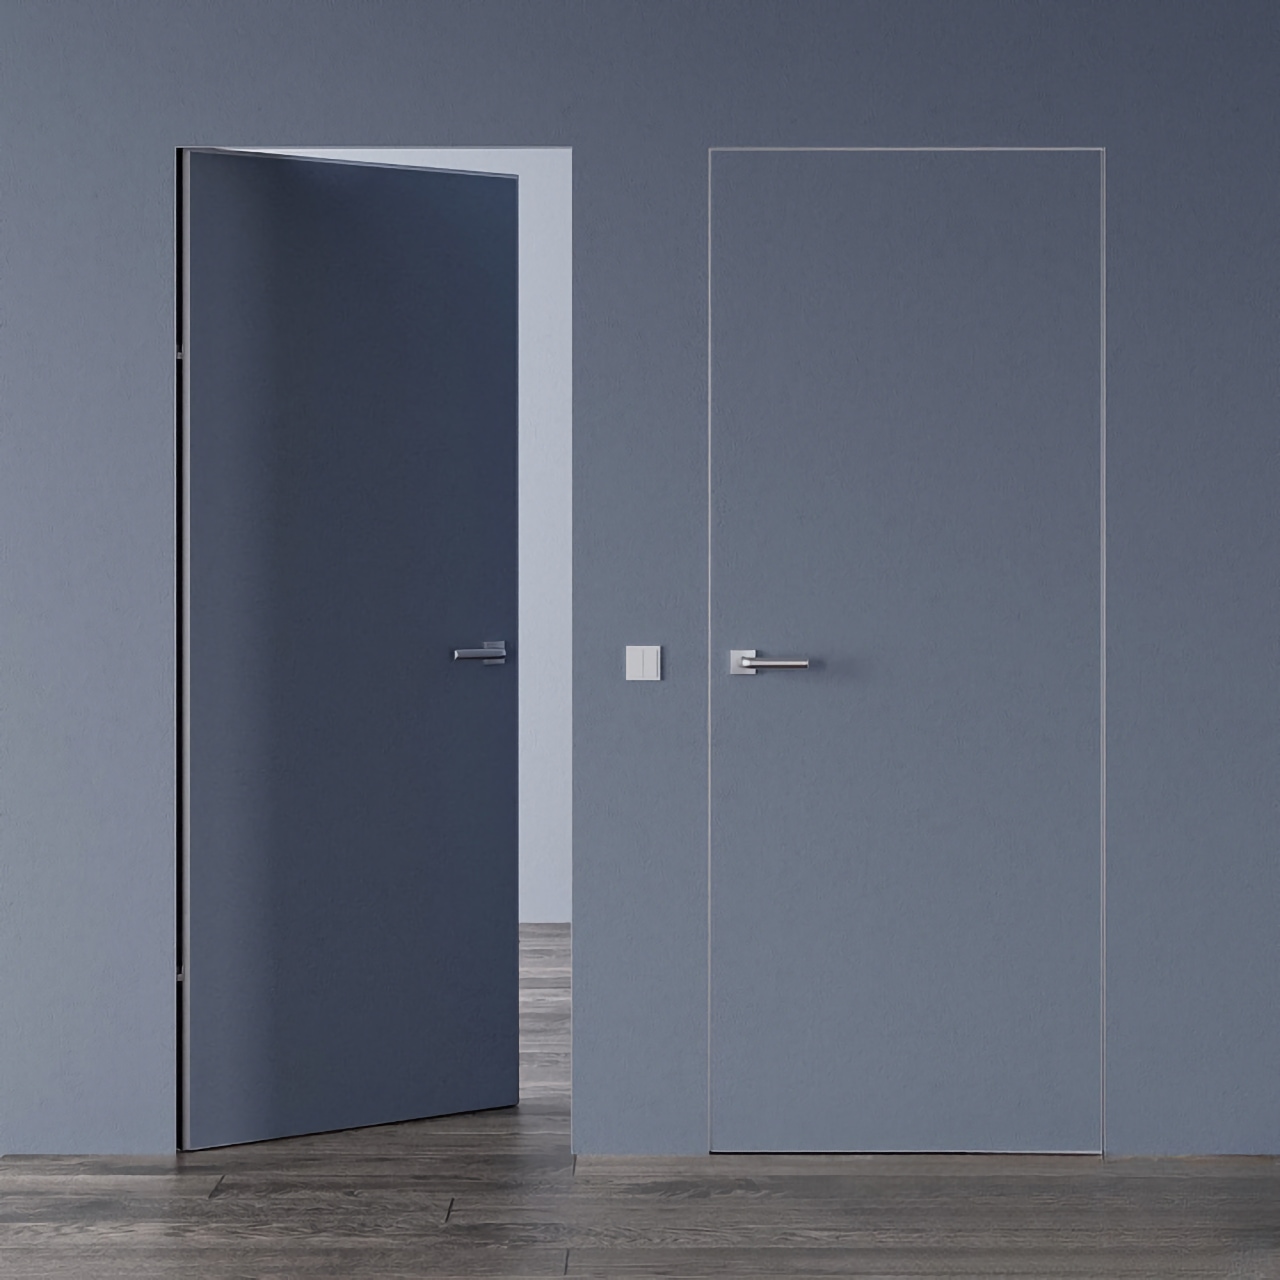 Двери скрытые под покраску • Smart Invisible с алюминиевым серым торцом внутреннее открывание